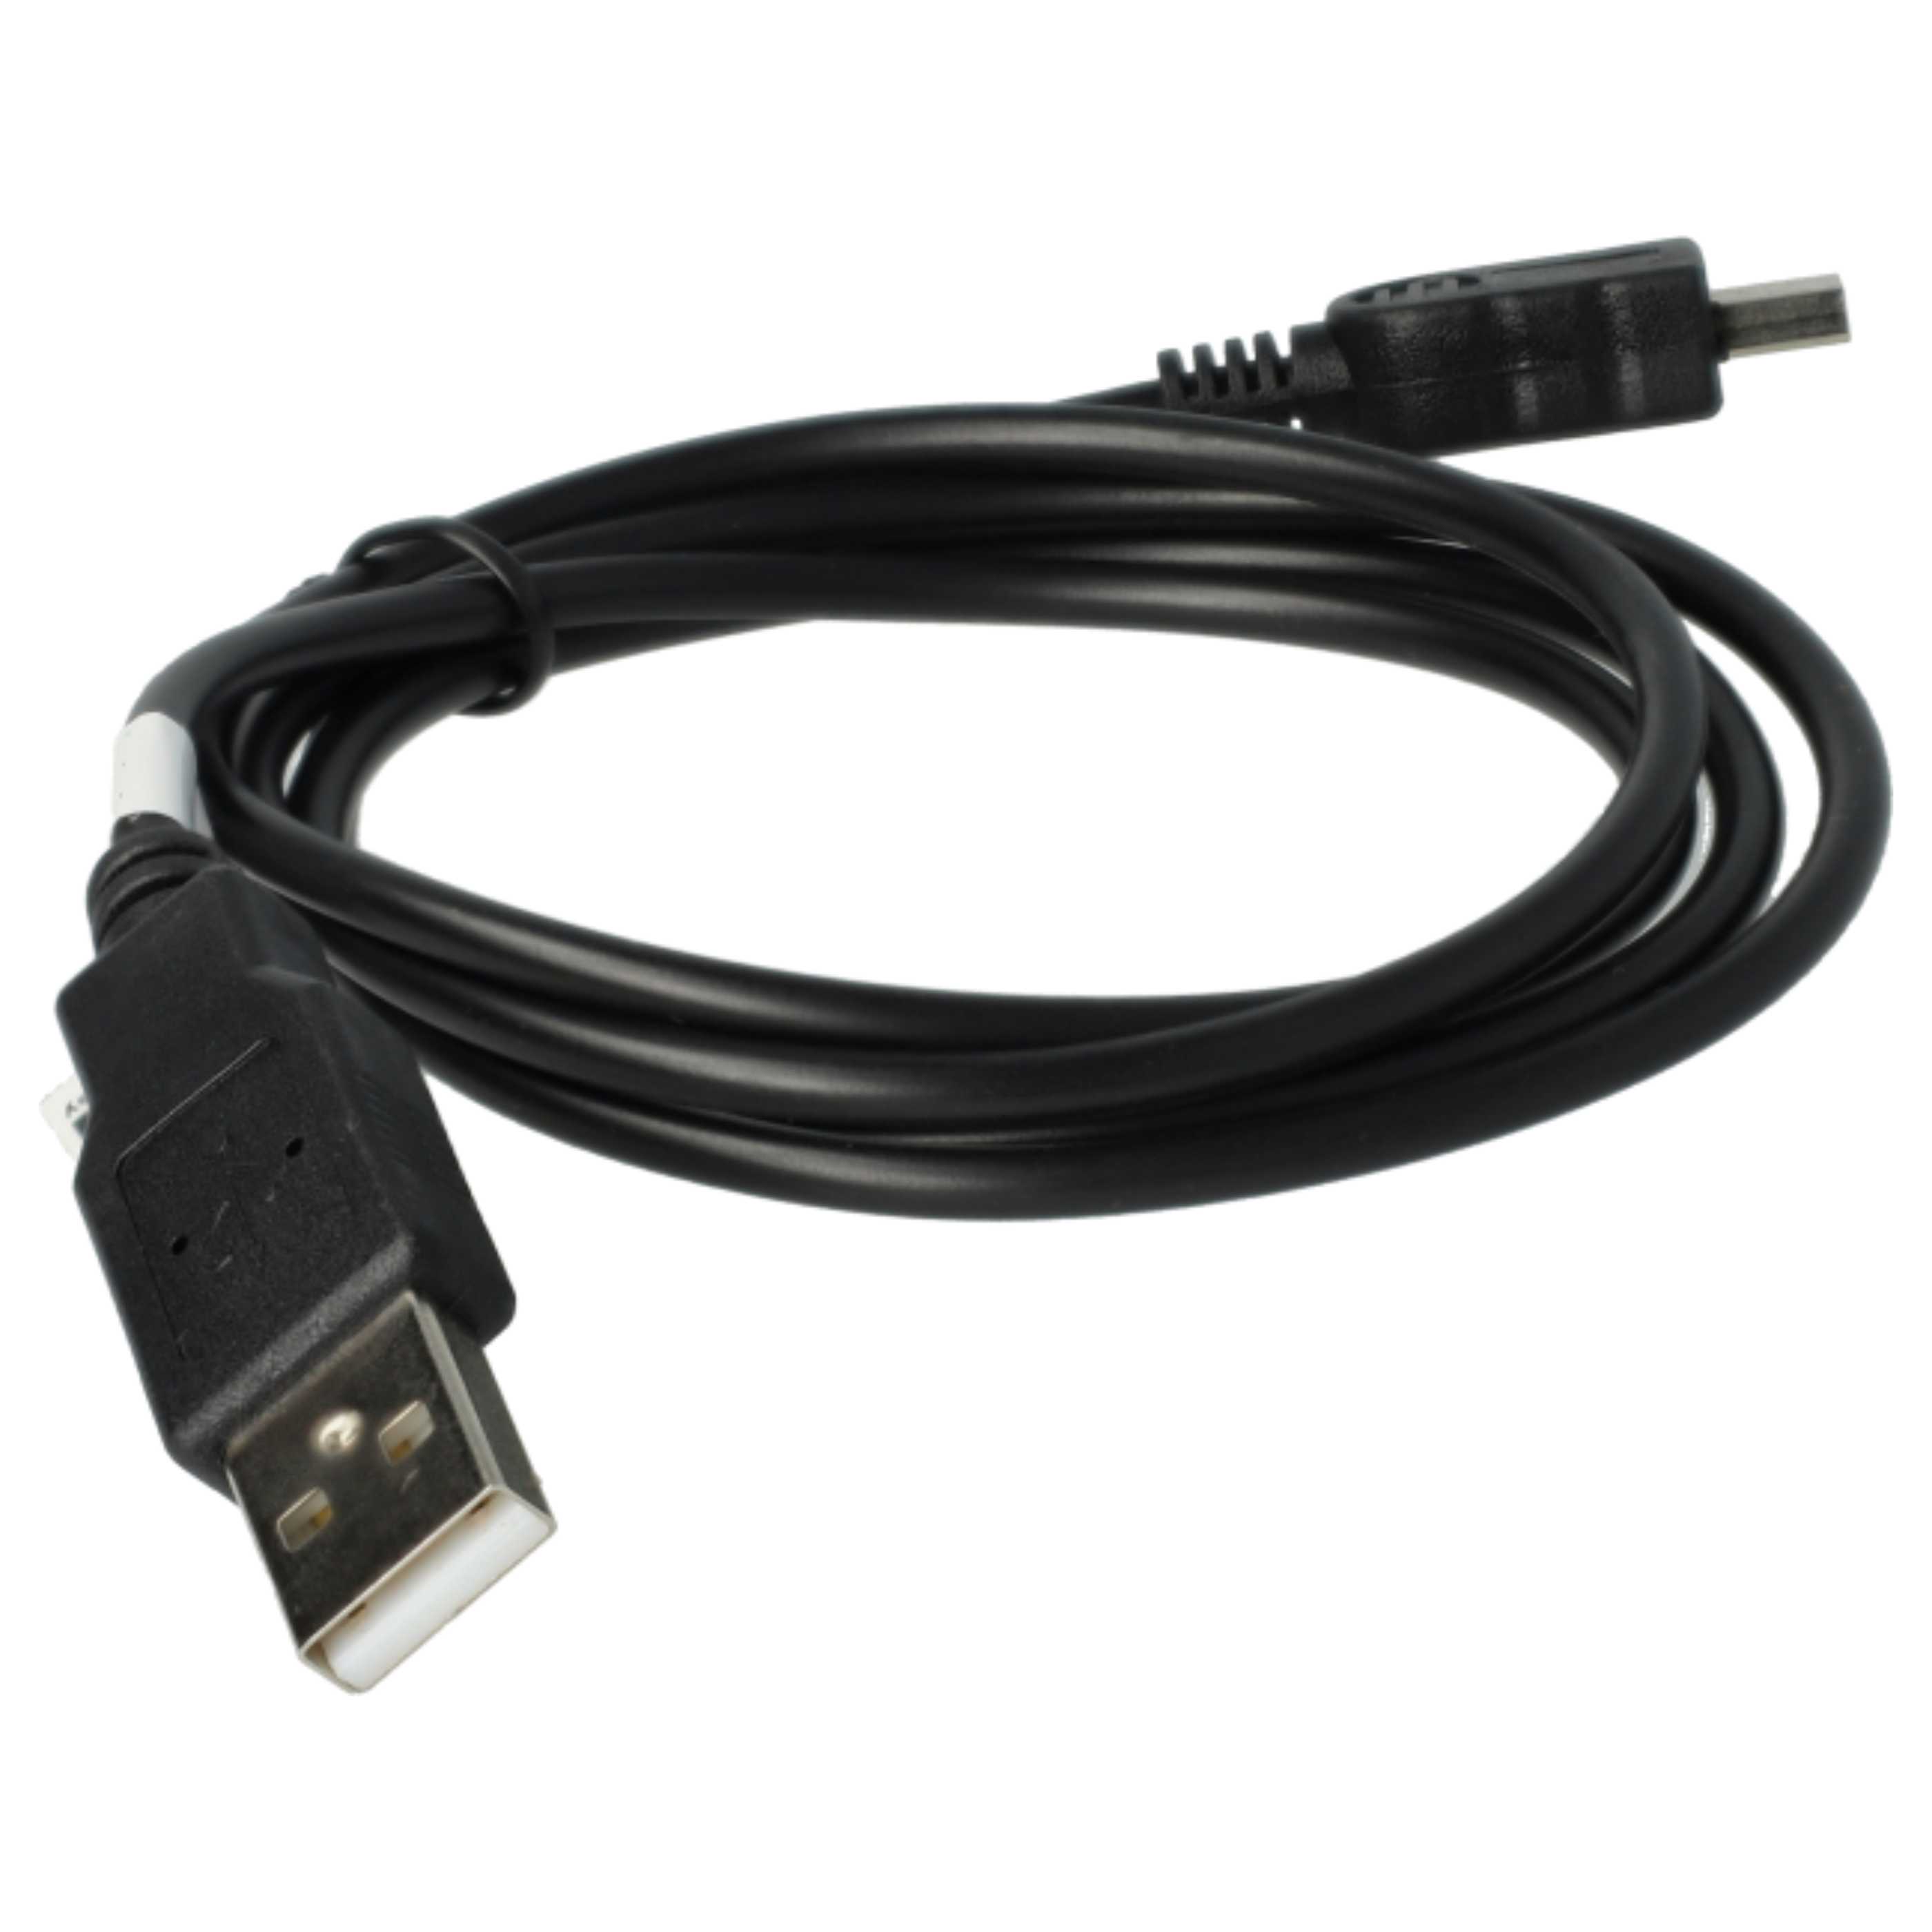 Cable de datos USB reemplaza Nikon UC-E15, UC-E3, UC-E4, UC-E5 para cámaras Cect - 100 cm